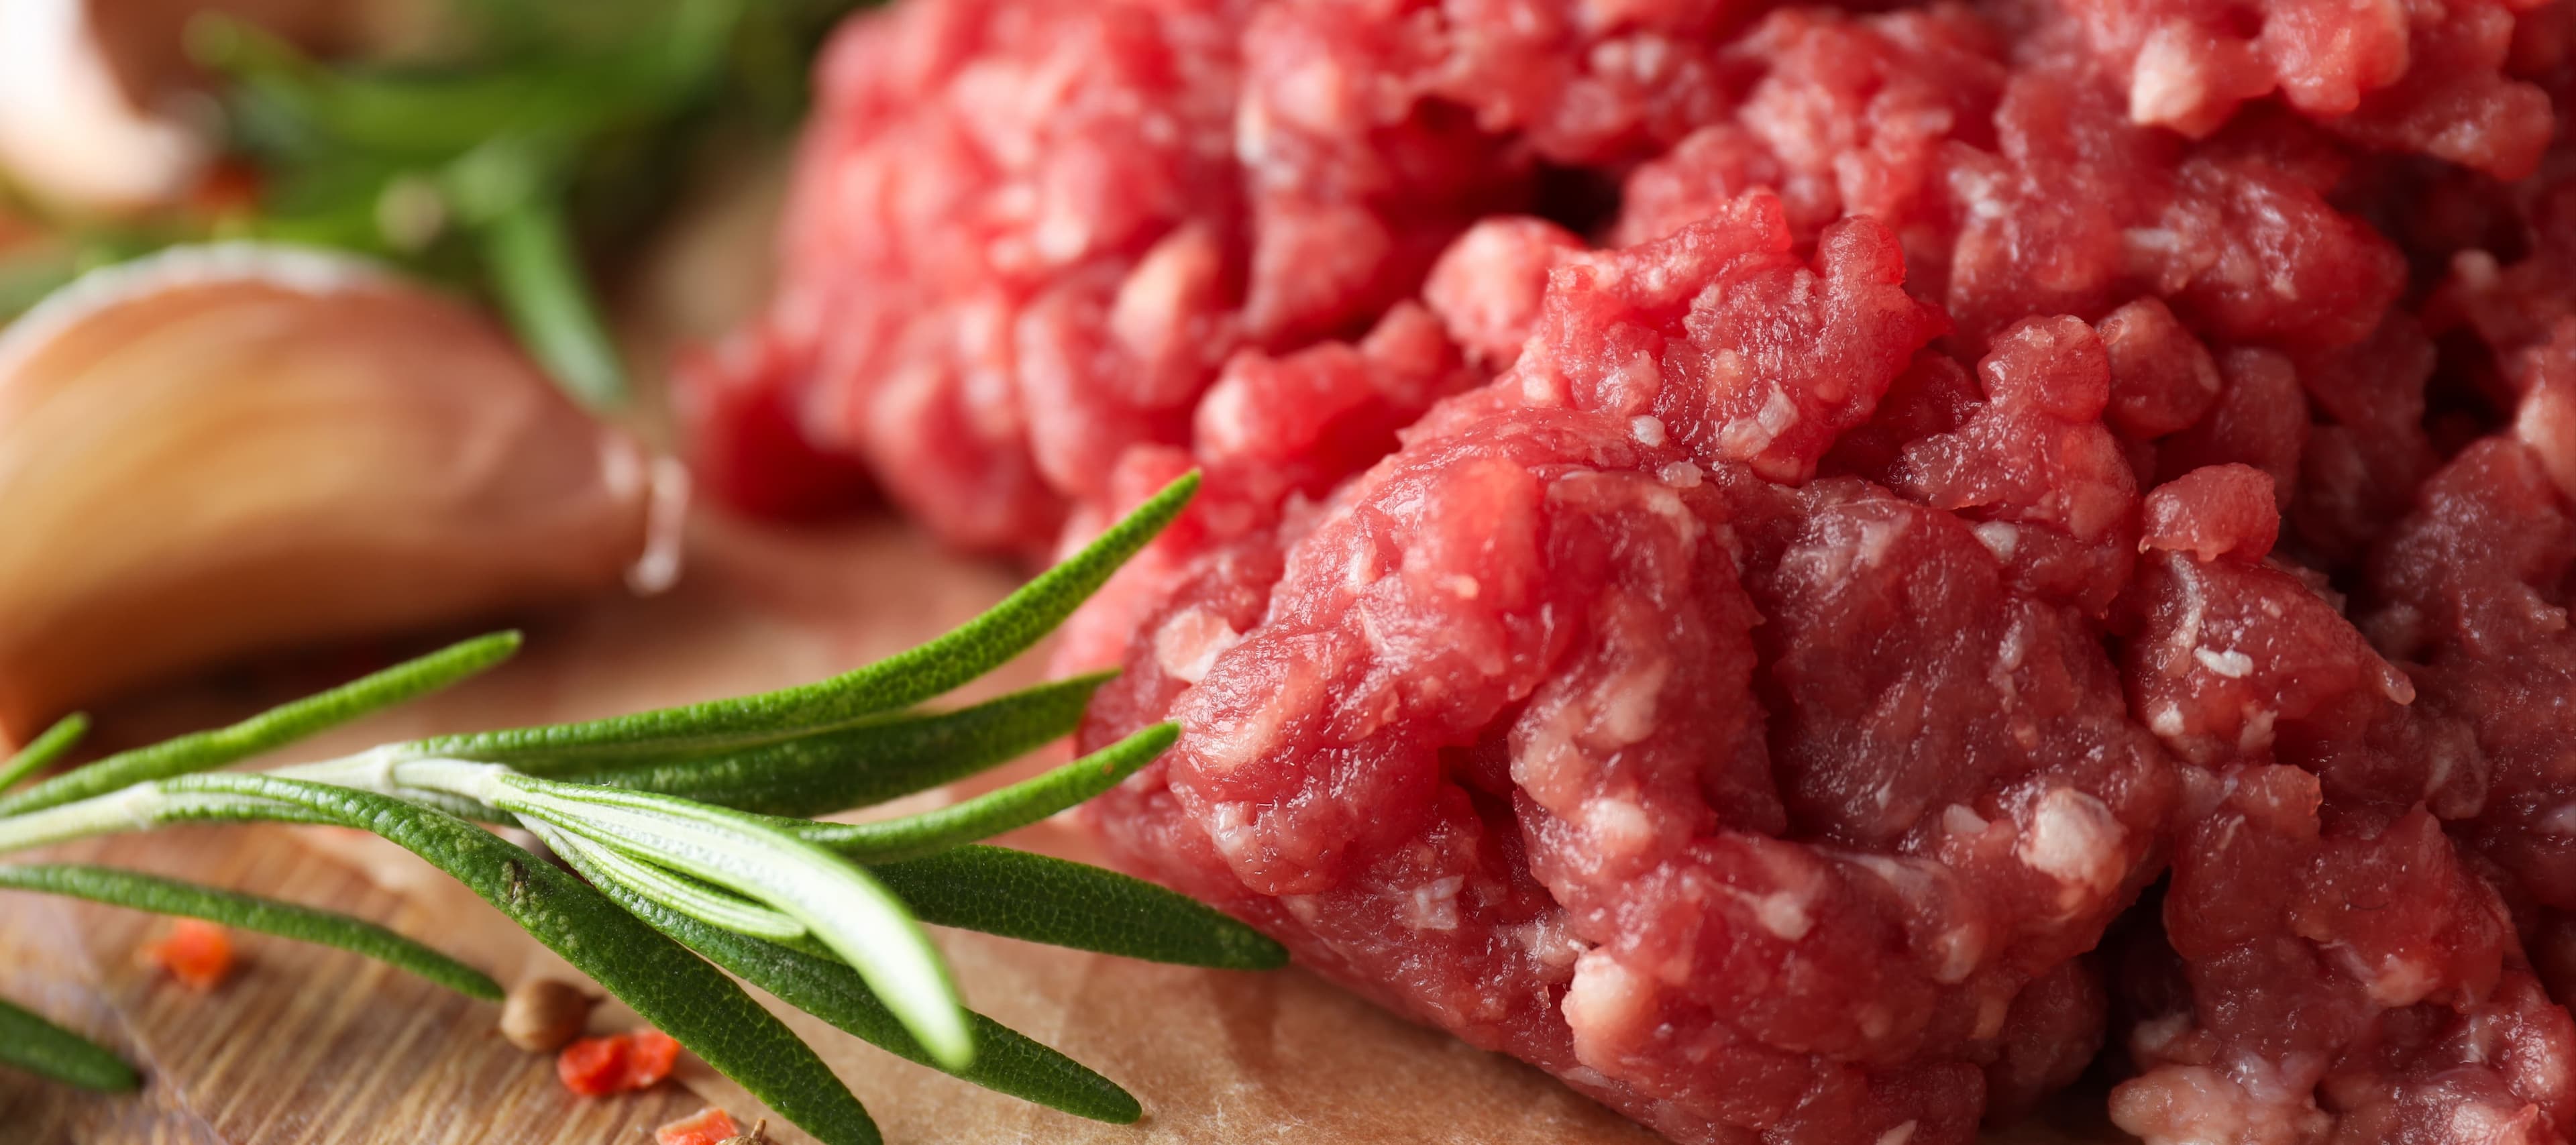 Фото новости: "Российская компания собирается выпустить на рынок клеточное мясо в 2025 г."